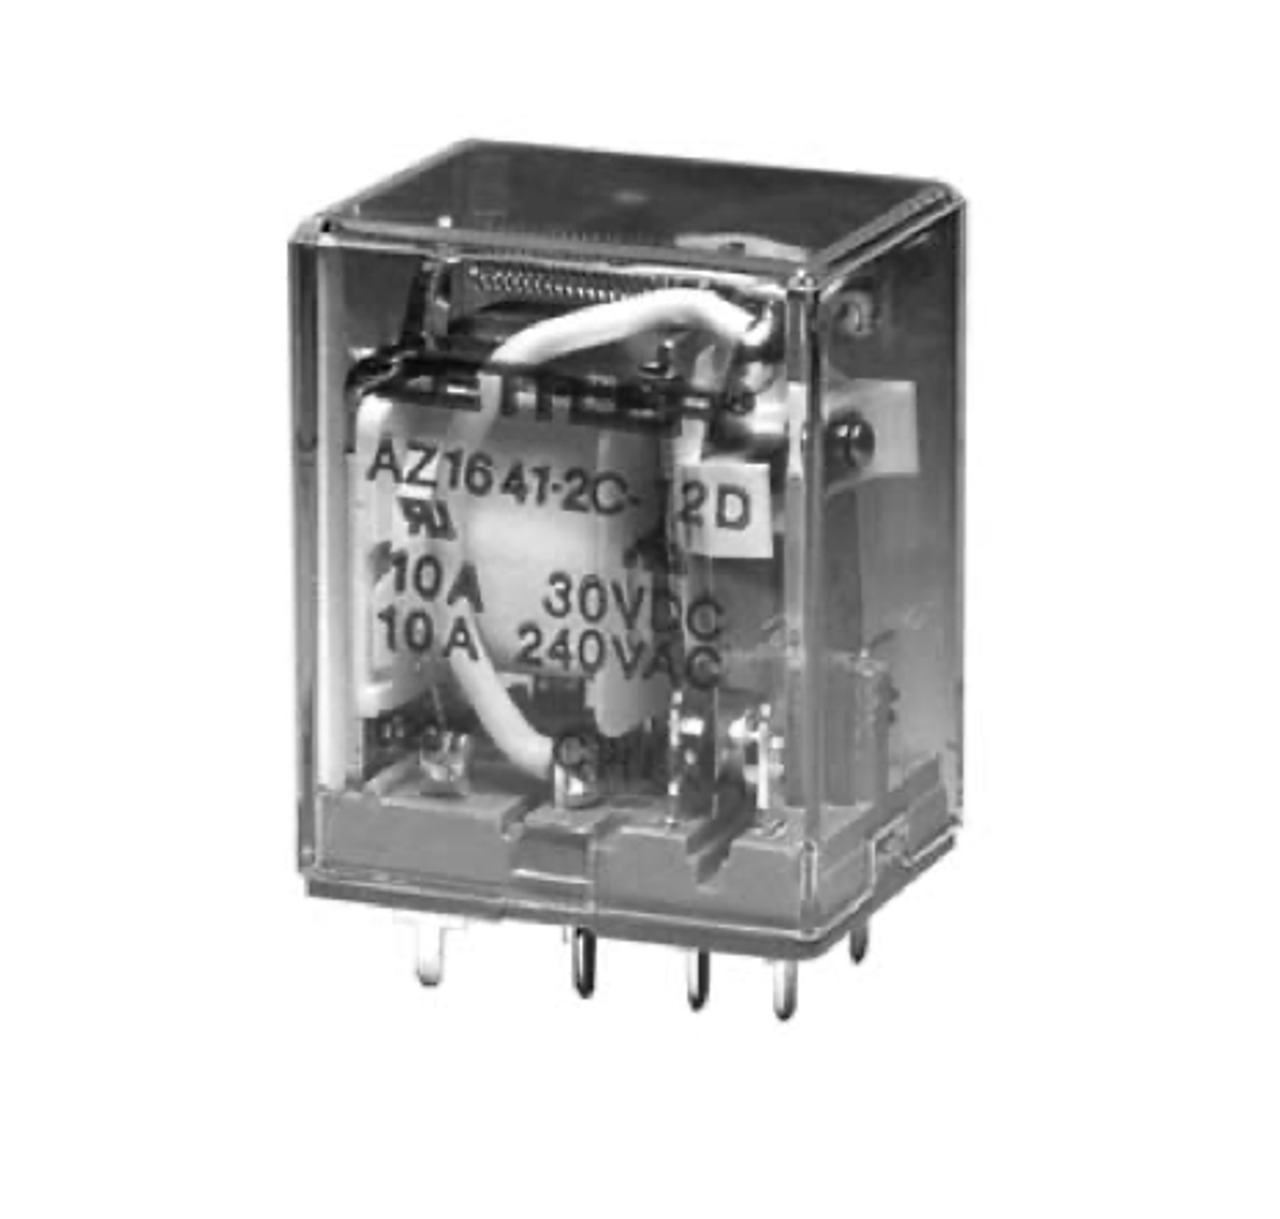 American Zettler AZ1641-2CT-220A Power Relay